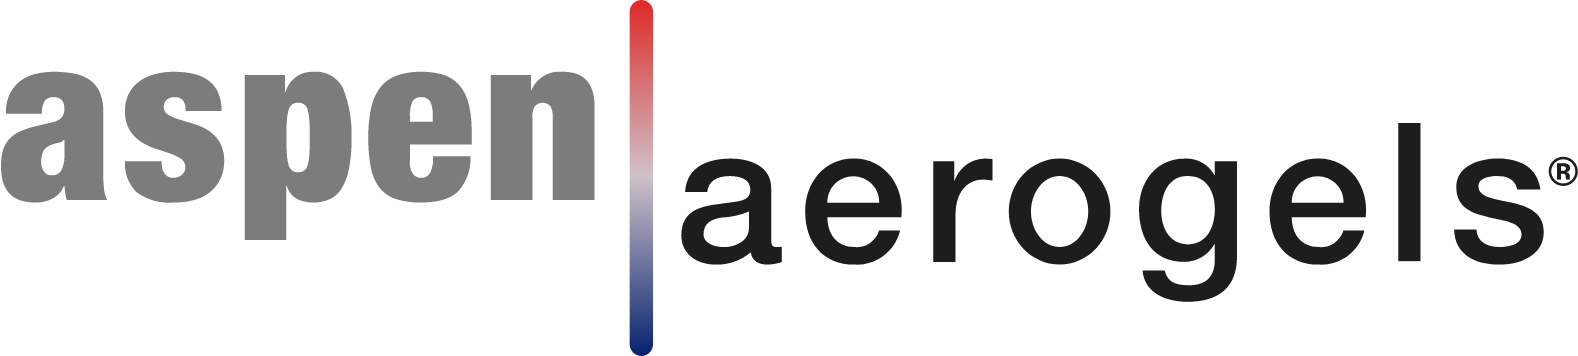 Aspen Aerogels logo large (transparent PNG)